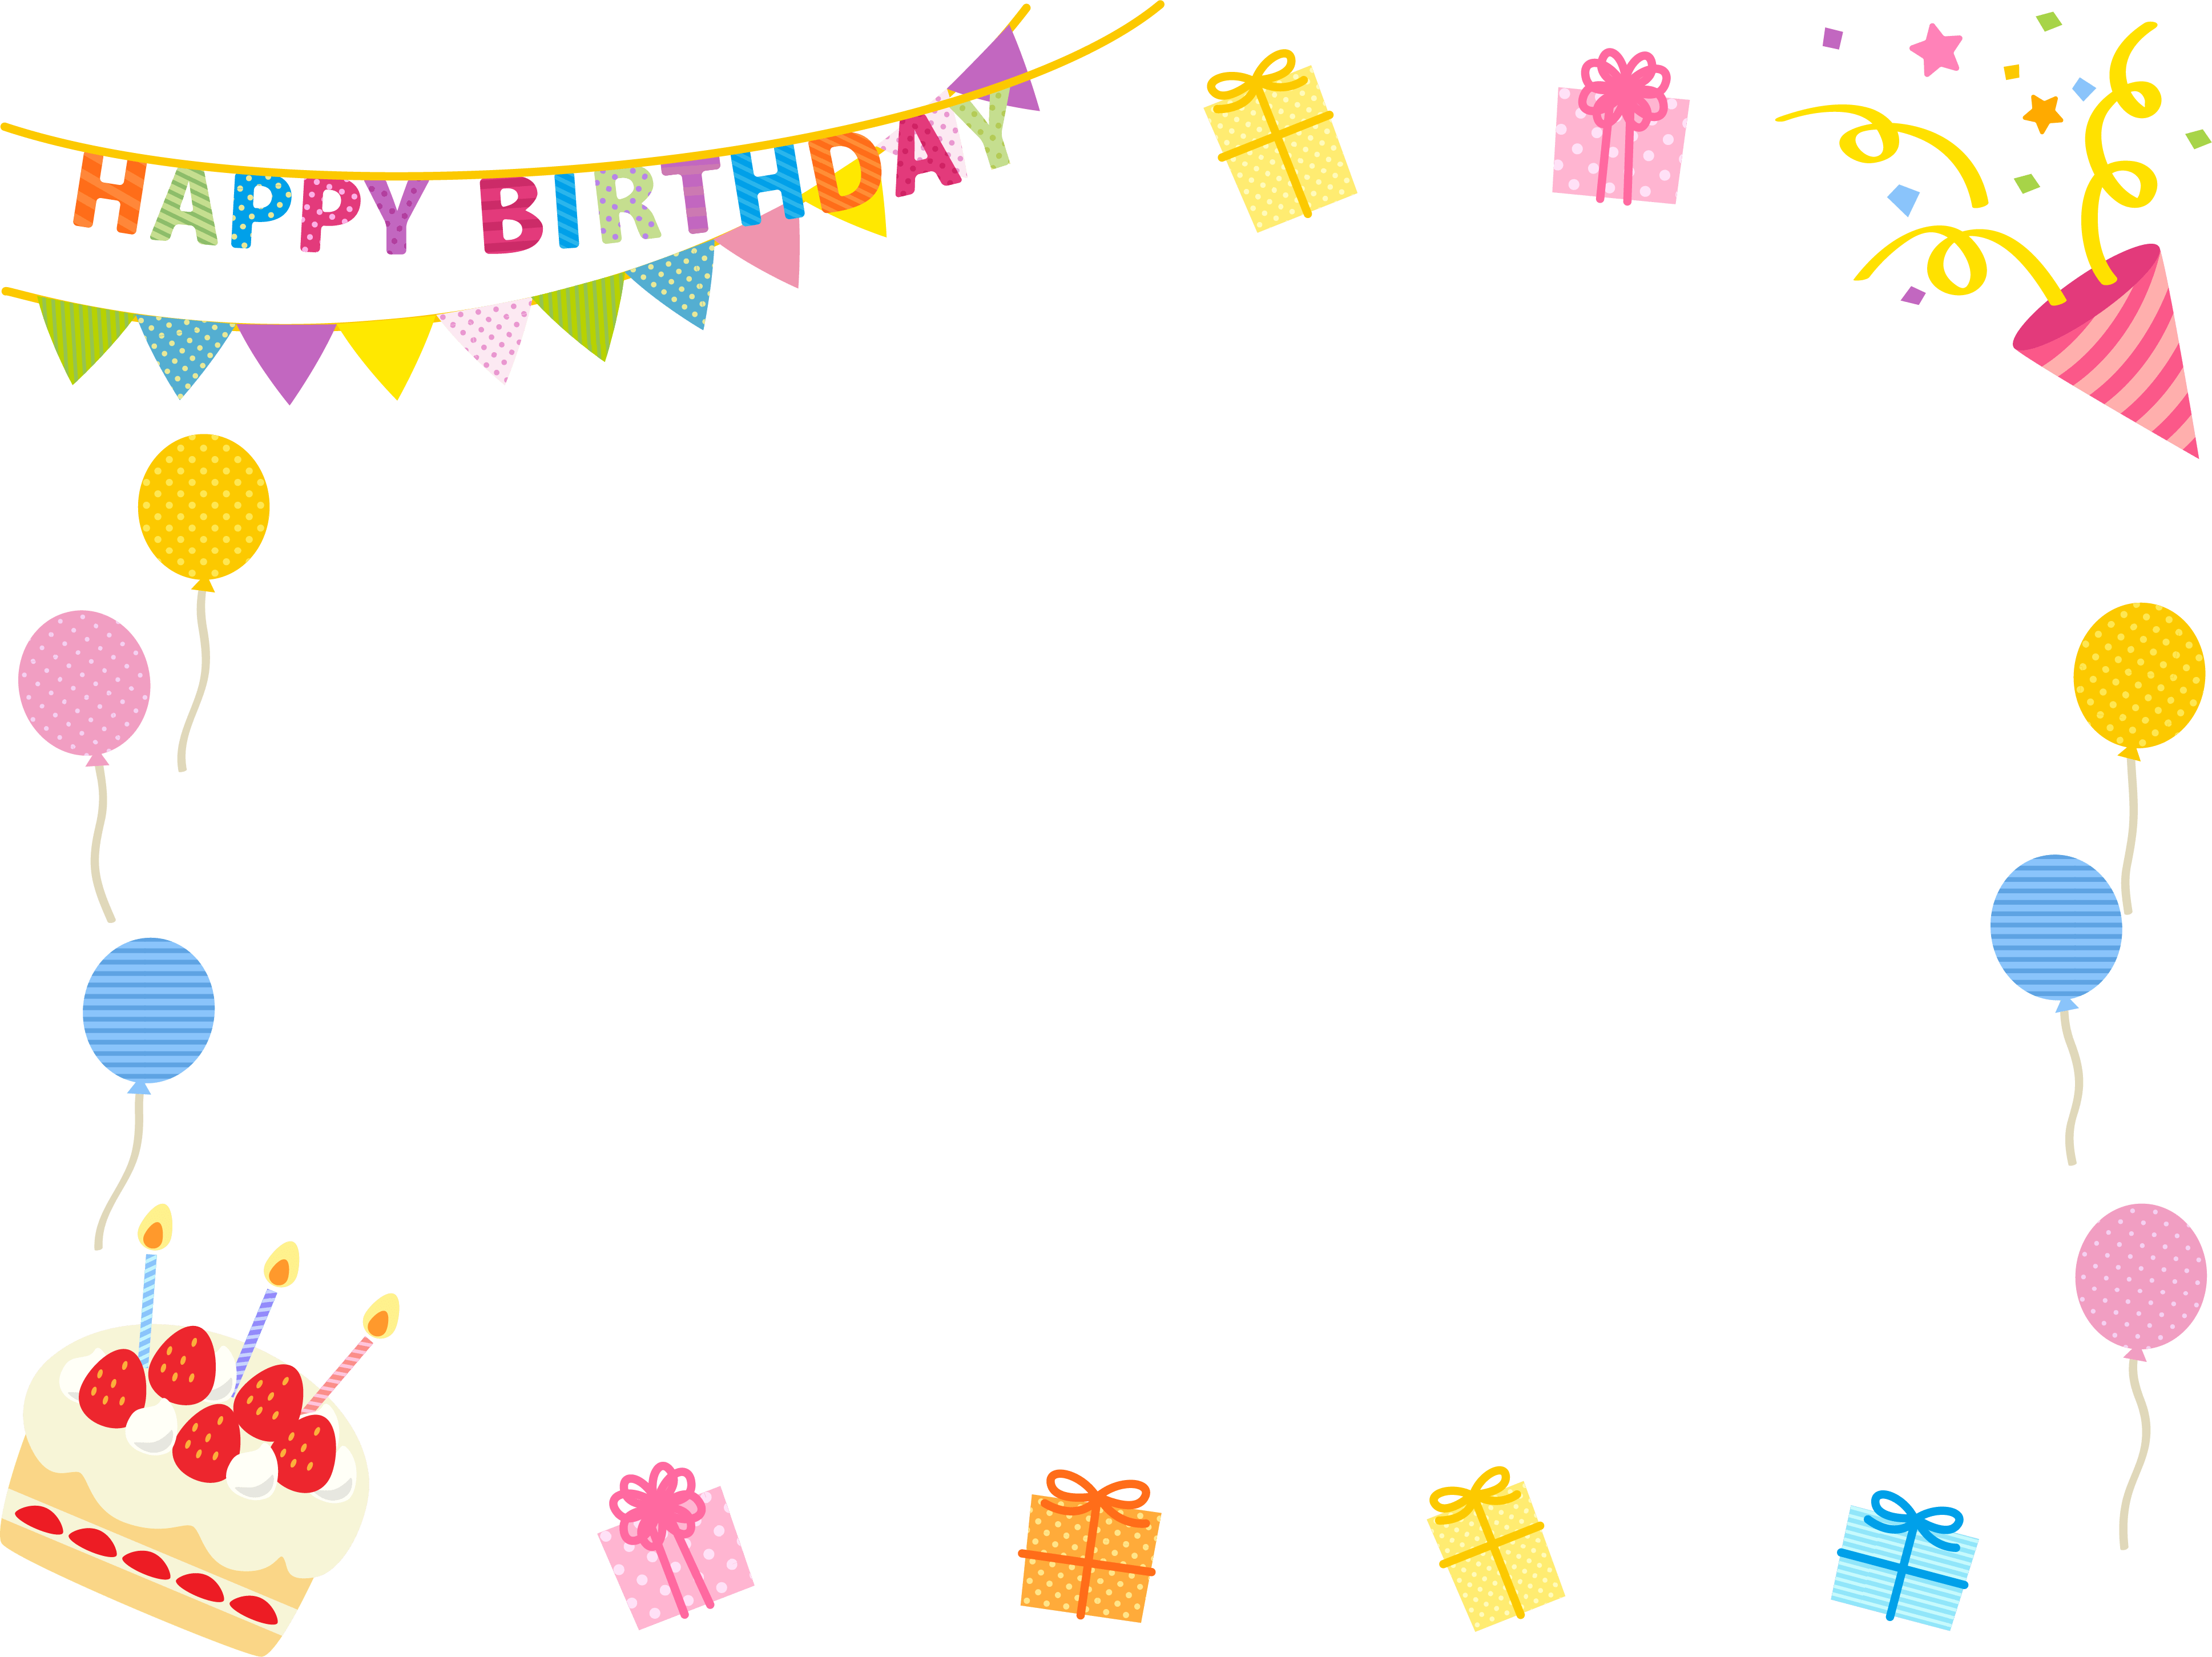 フラッグガーランドとプレゼントの誕生日フレーム飾り枠